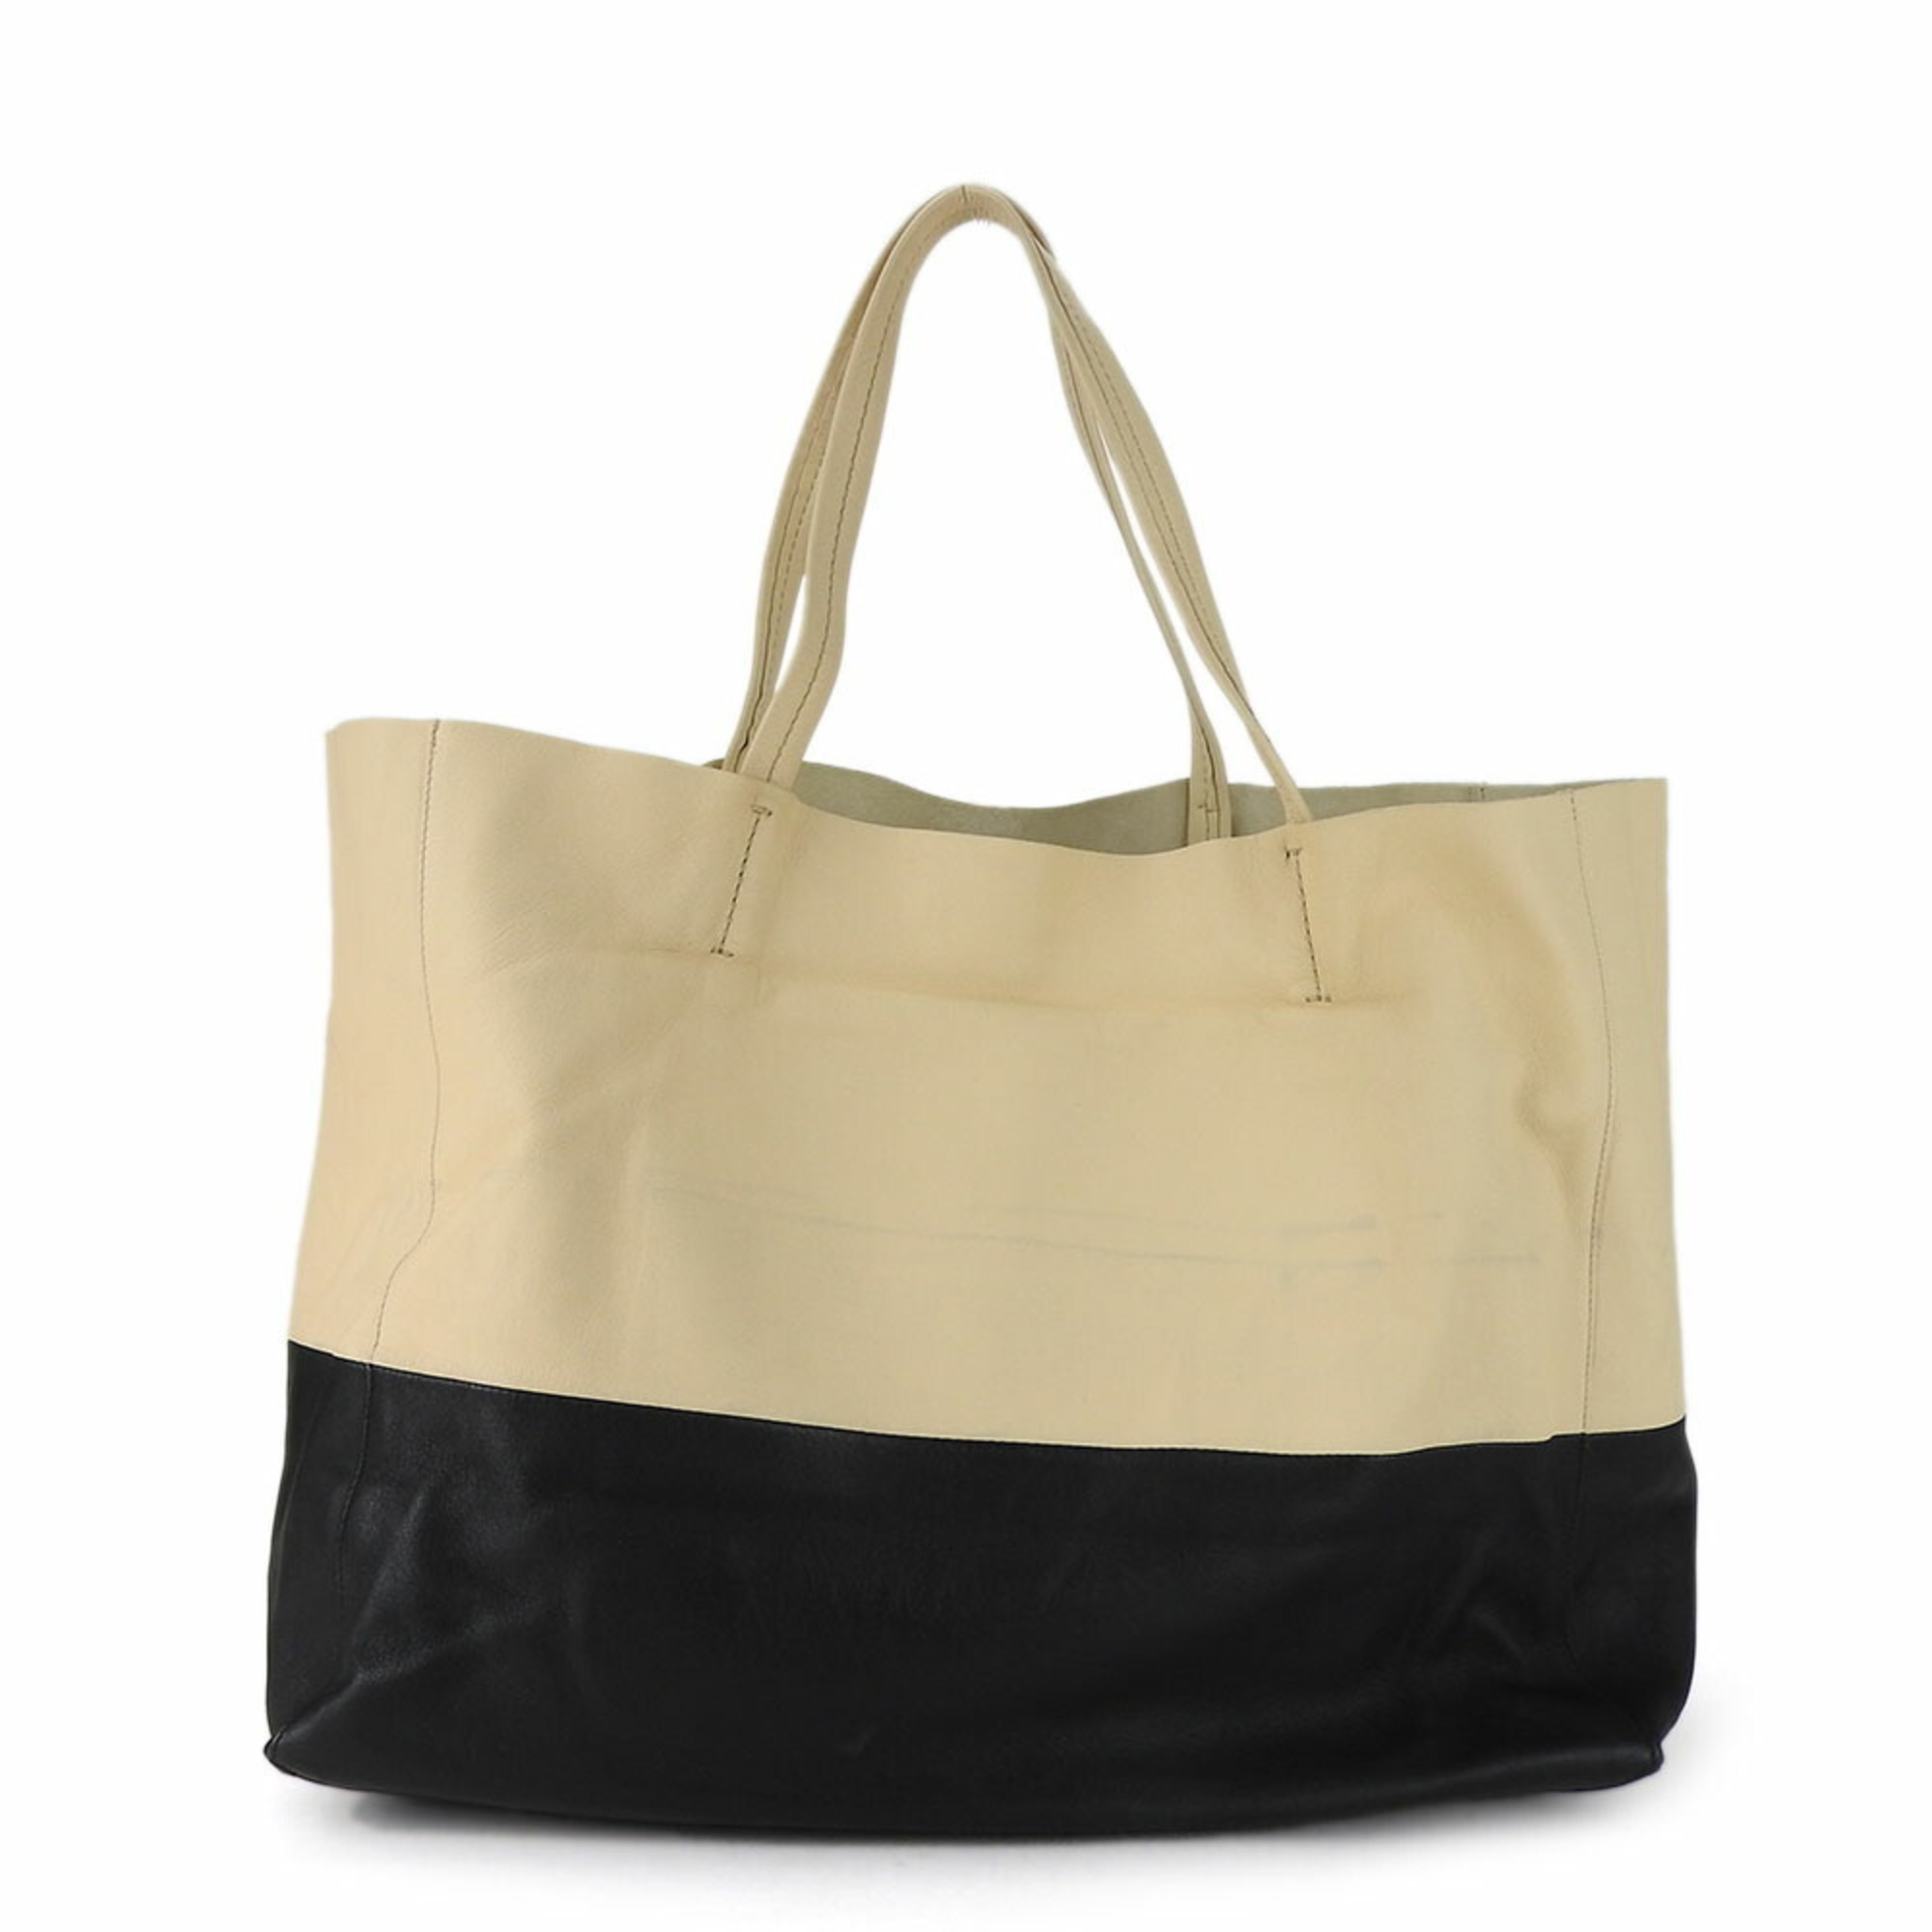 Celine Tote Bag Horizontal Cabas 169263EBT Leather Beige Black Bicolor Women's CELINE